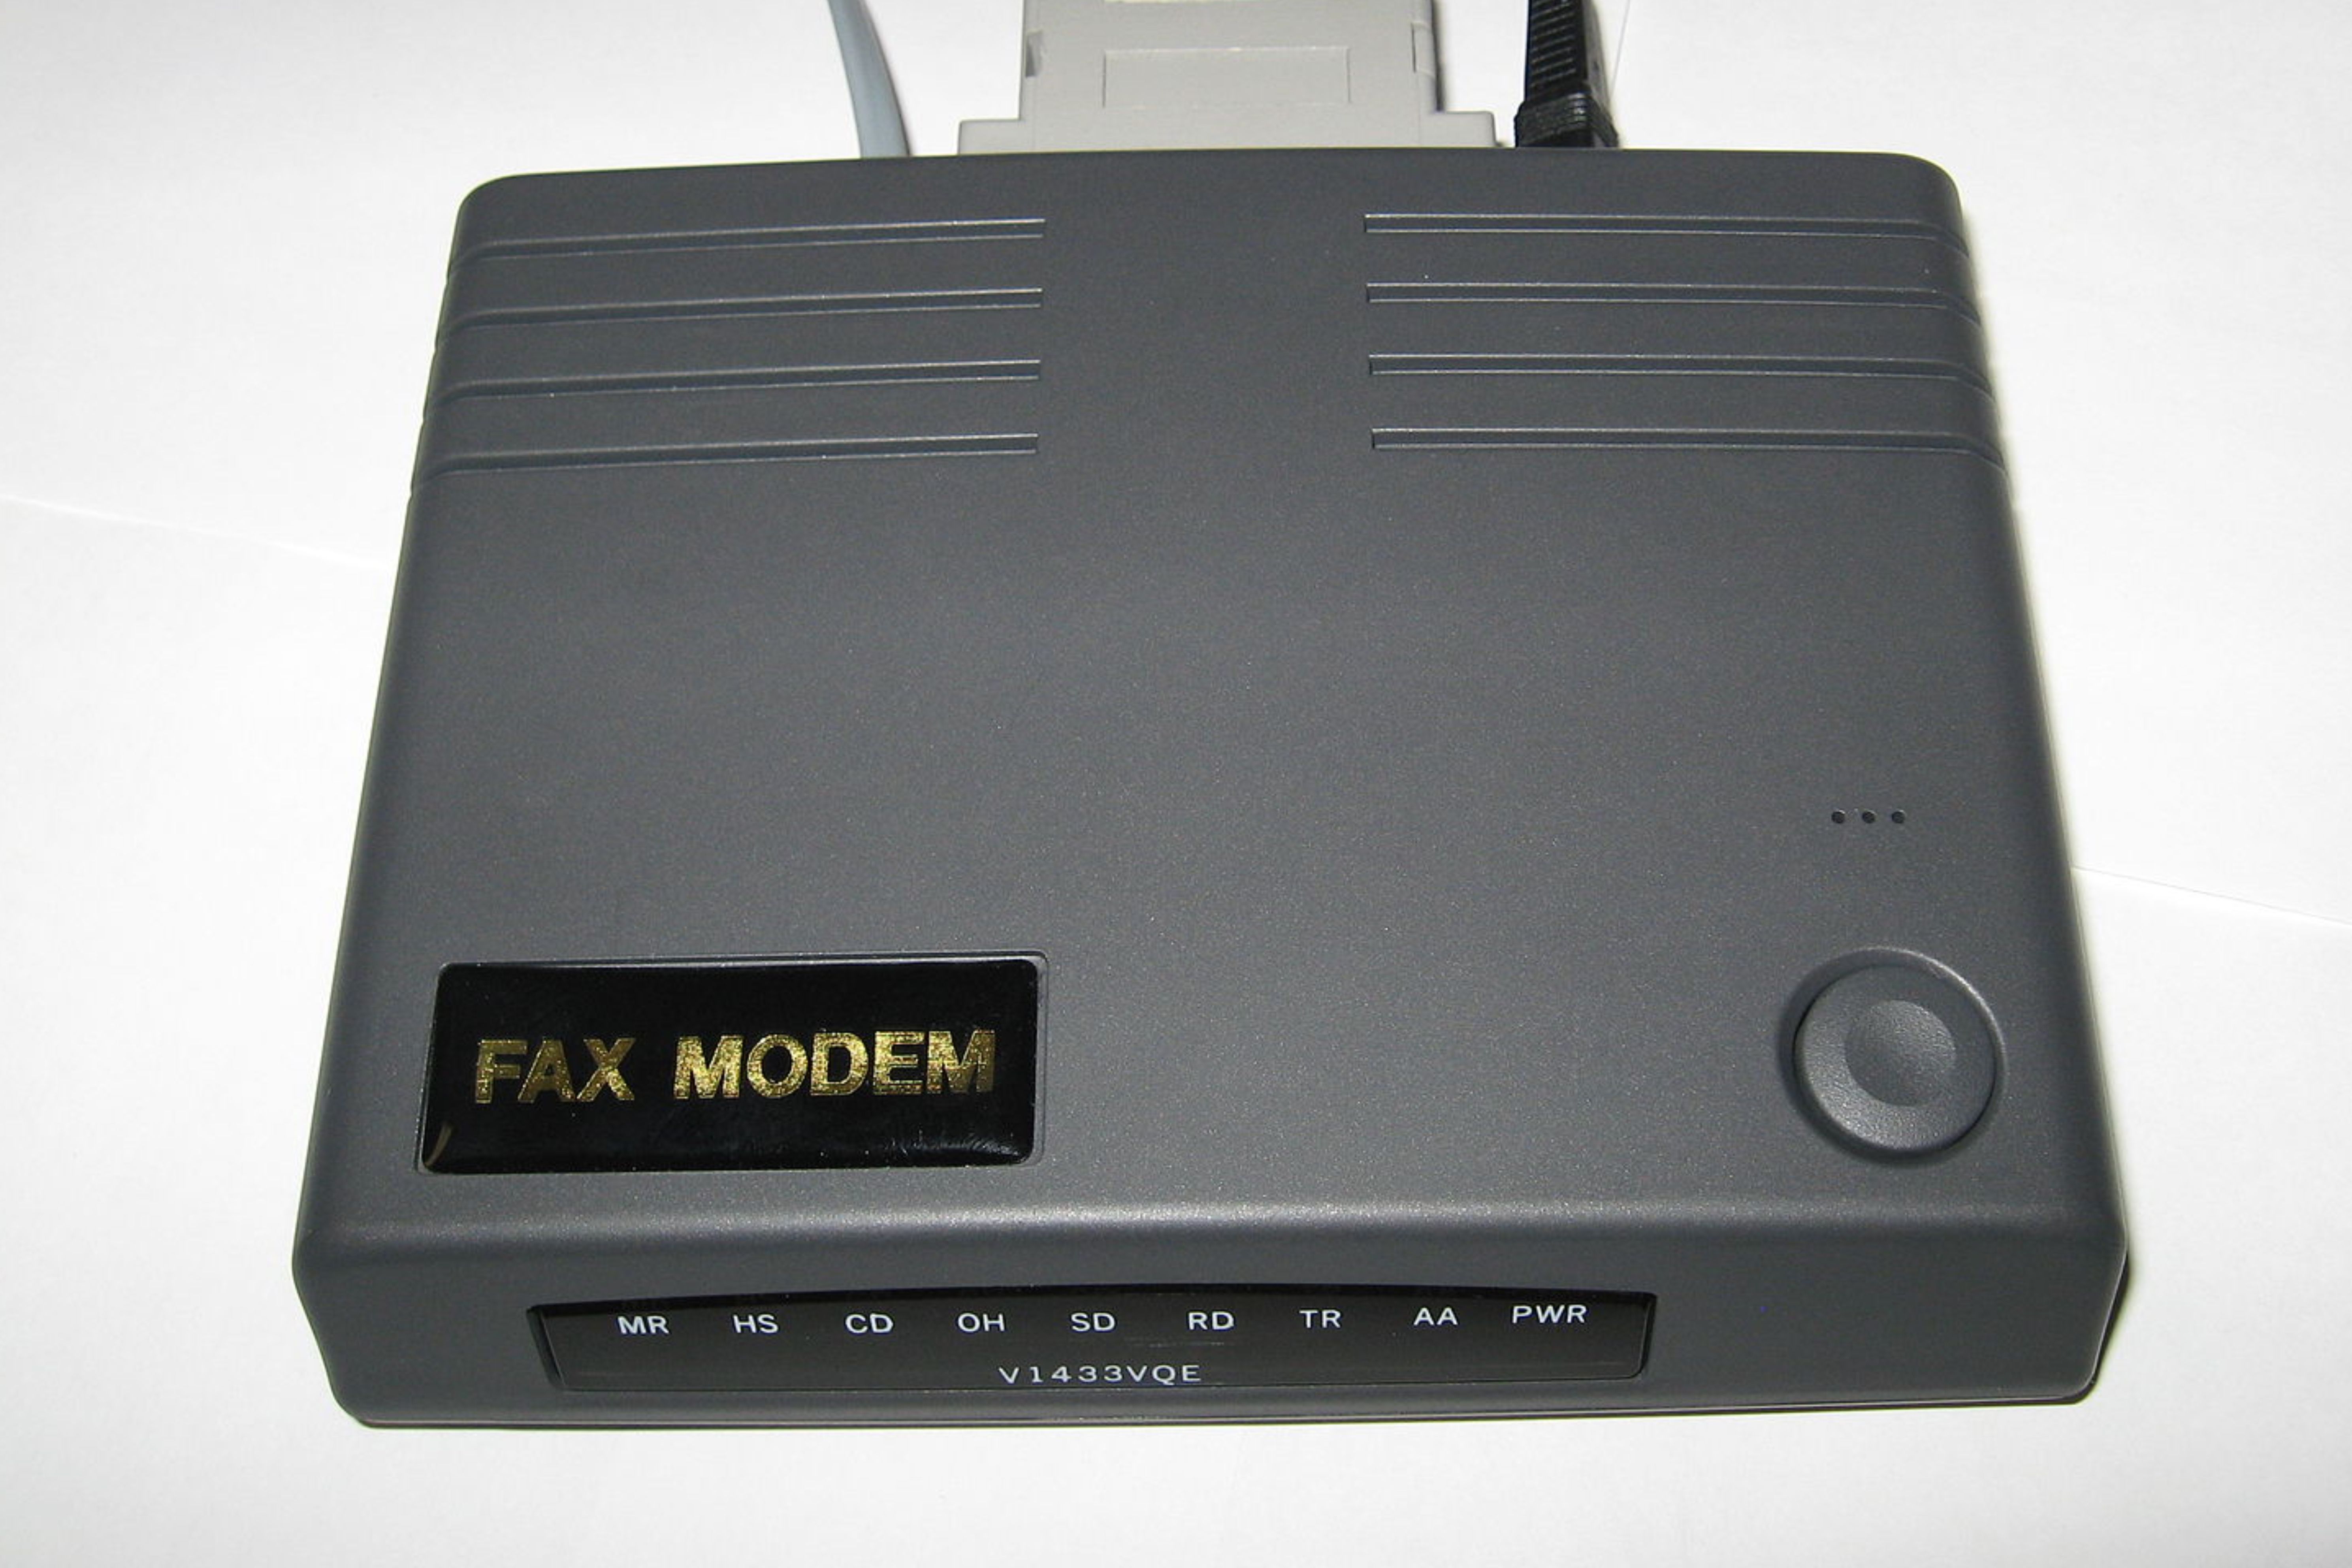 A dial-up modem.